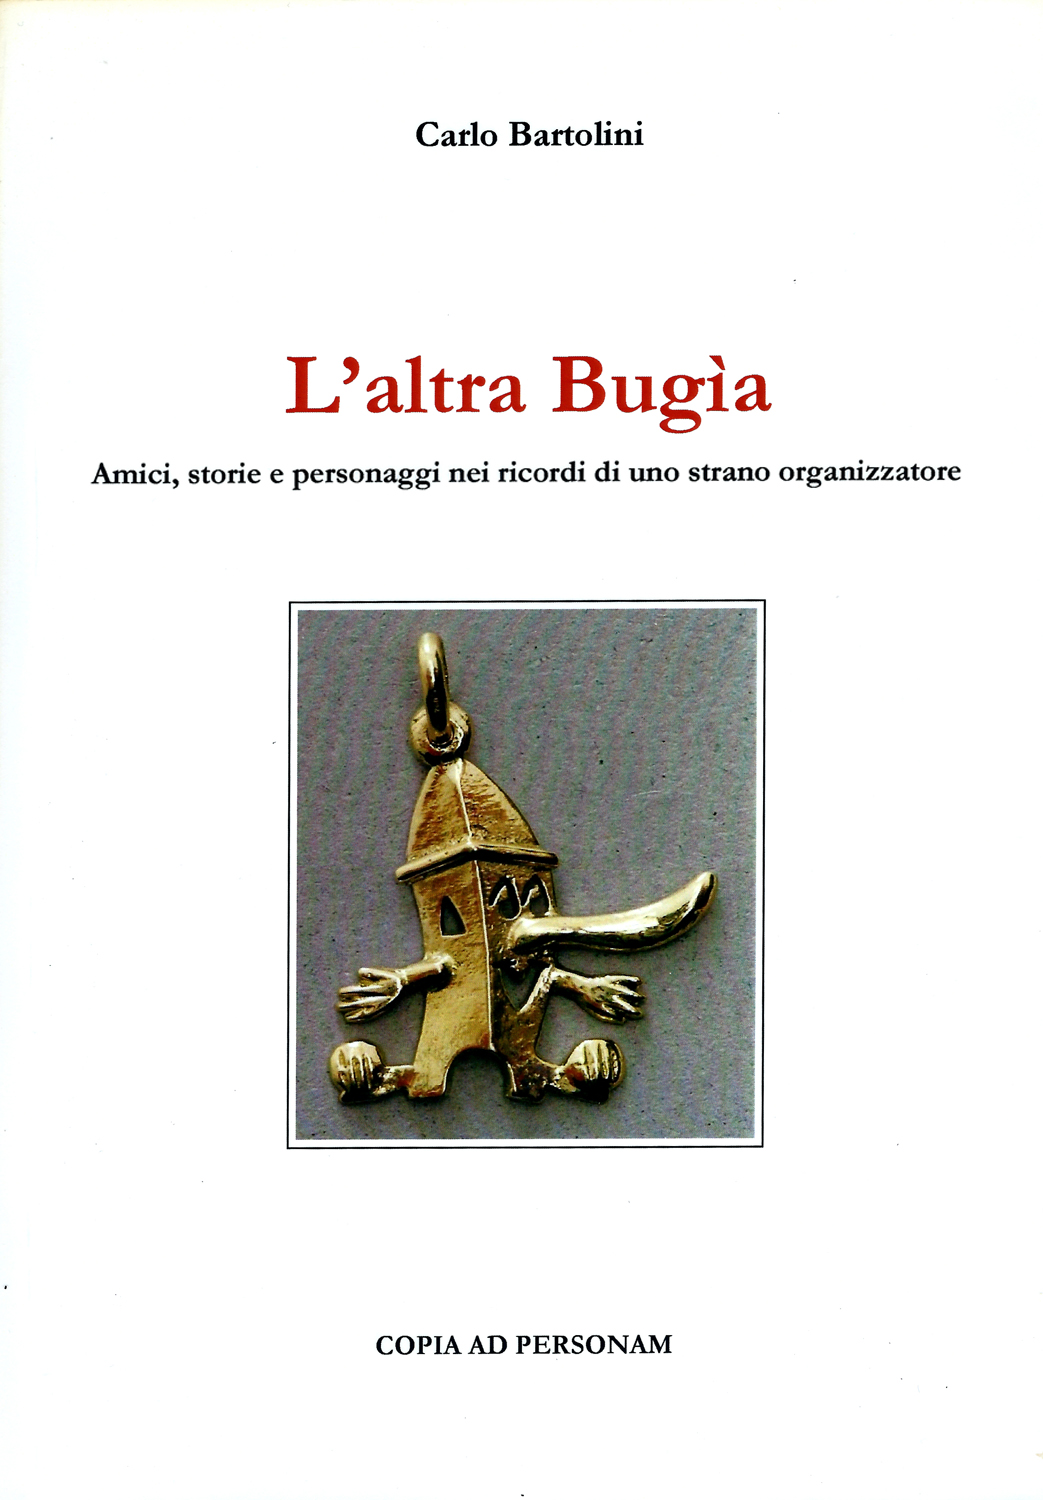 L'altra Bugìa - Carlo Bartolini